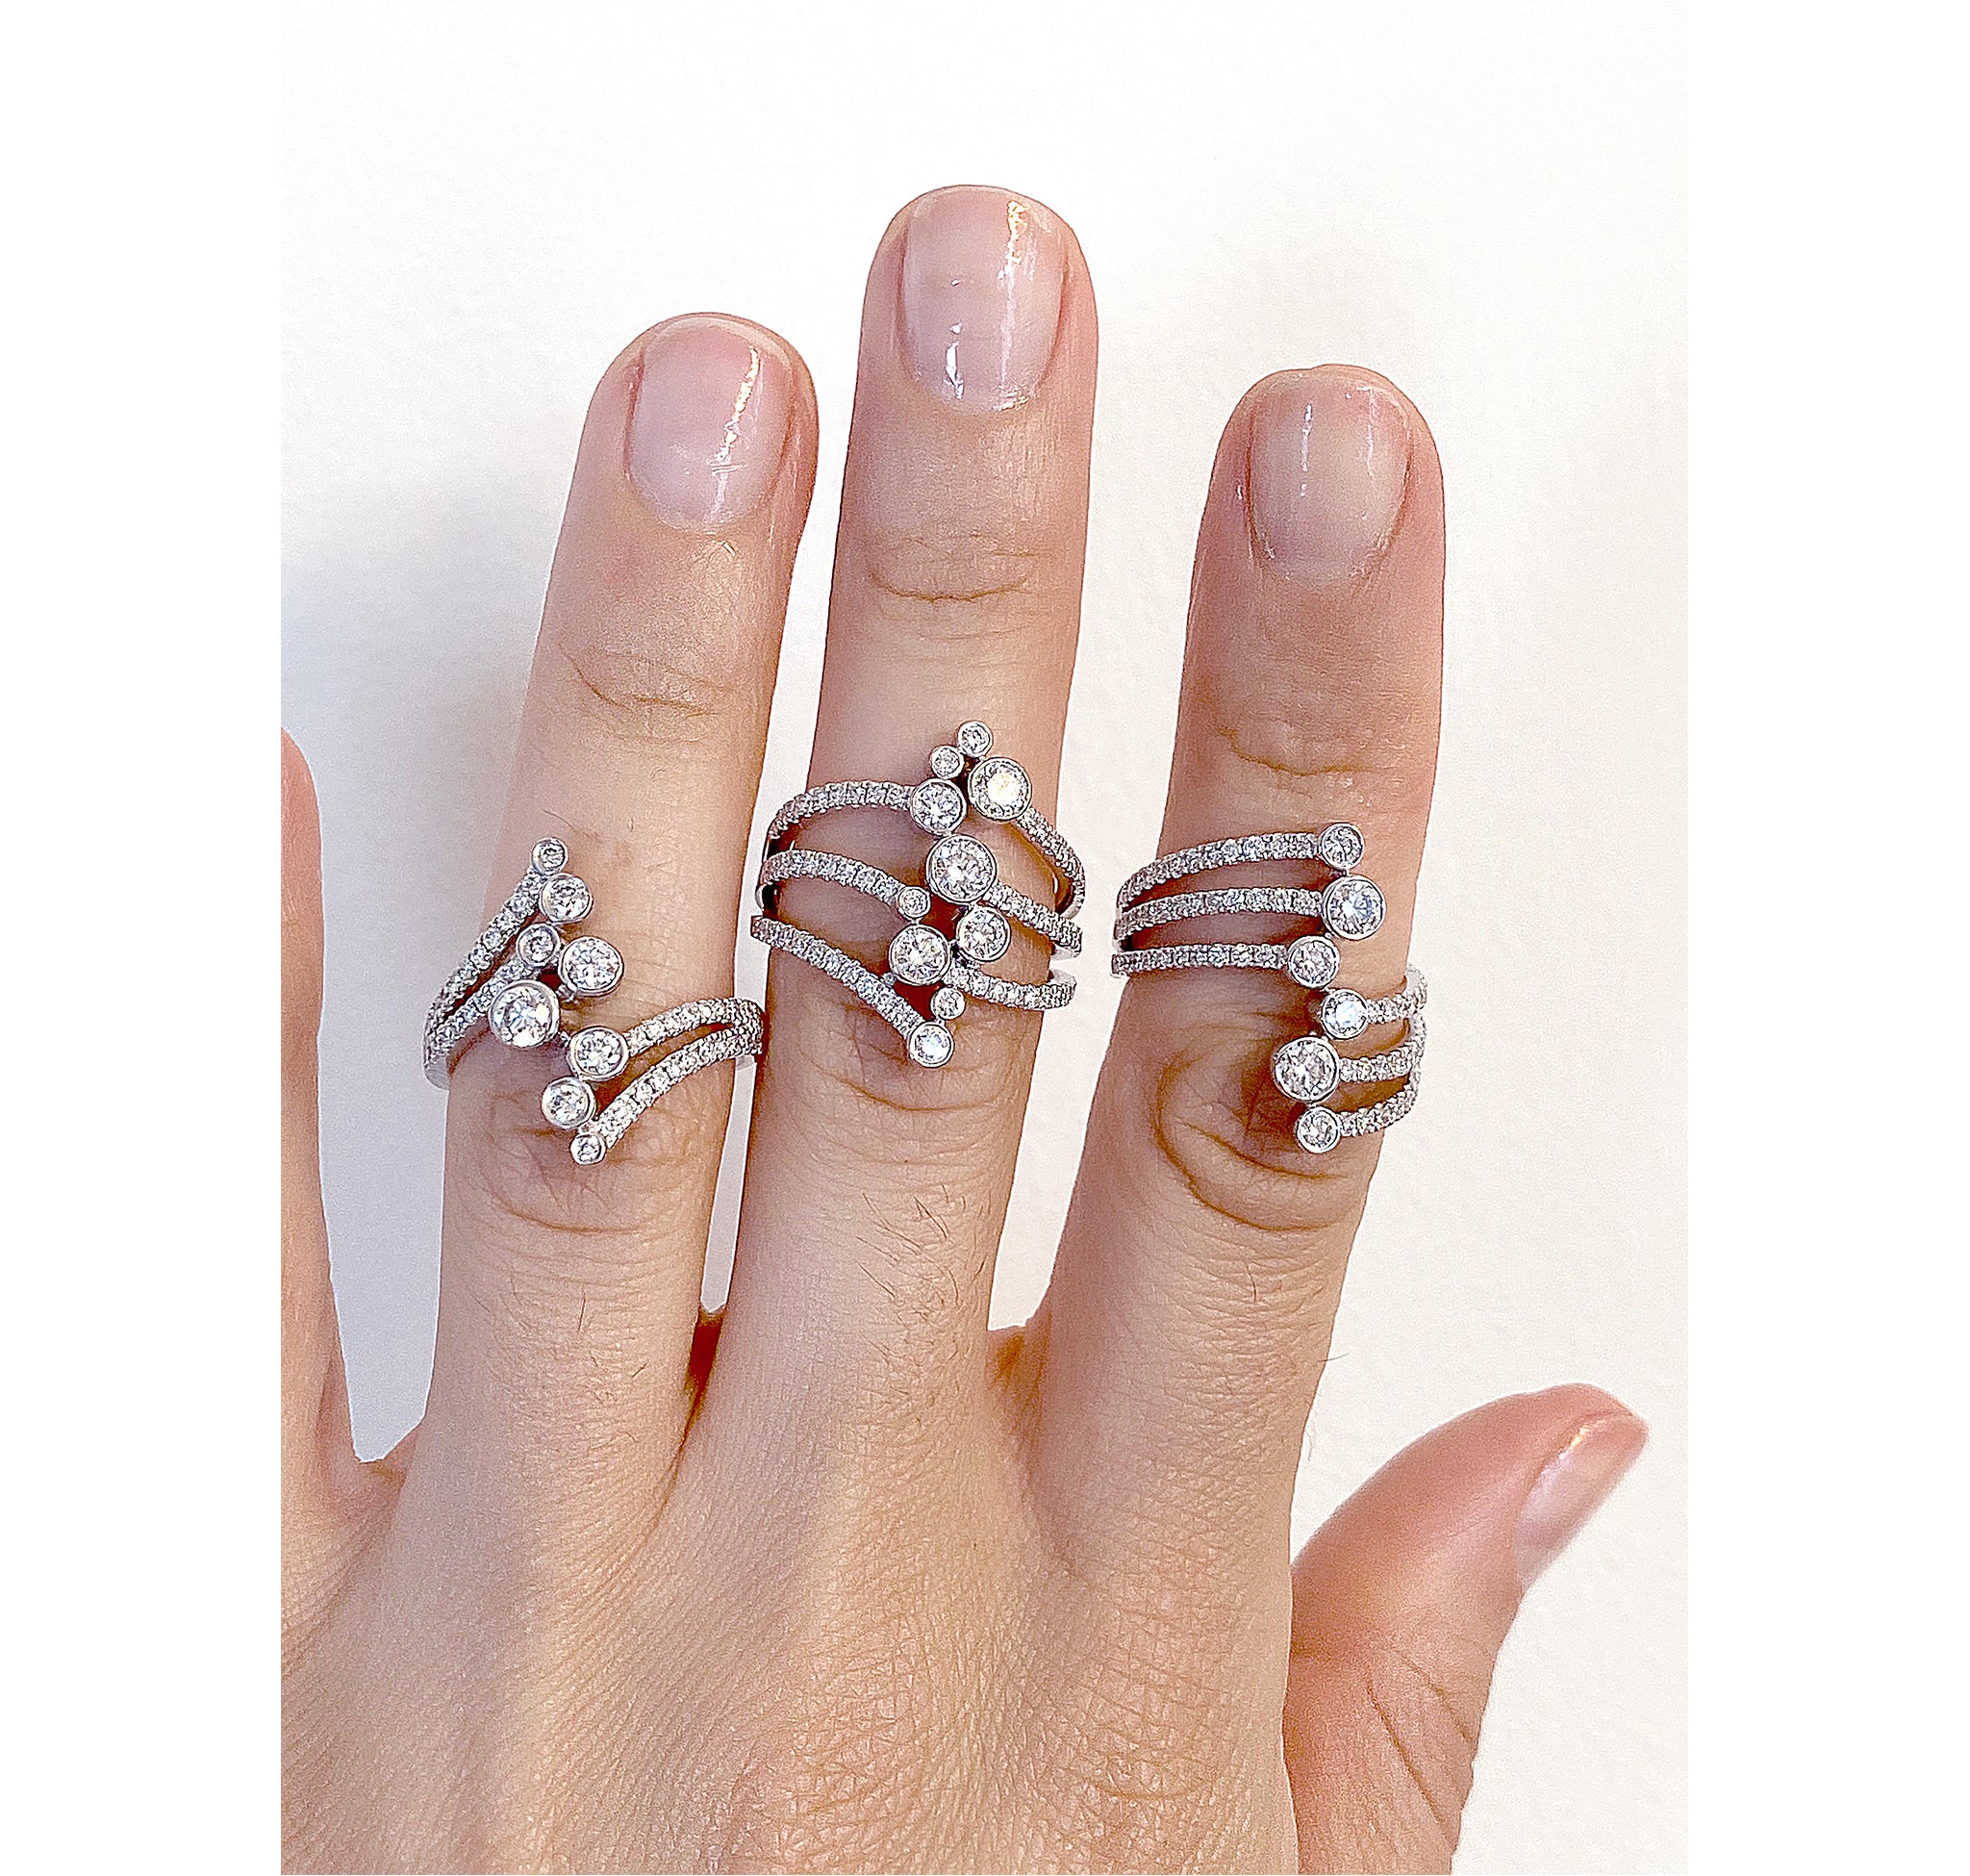 Marquise Diamond Spiral Stacking Ring / 14k Gold Spiral Diamond Ring | eBay